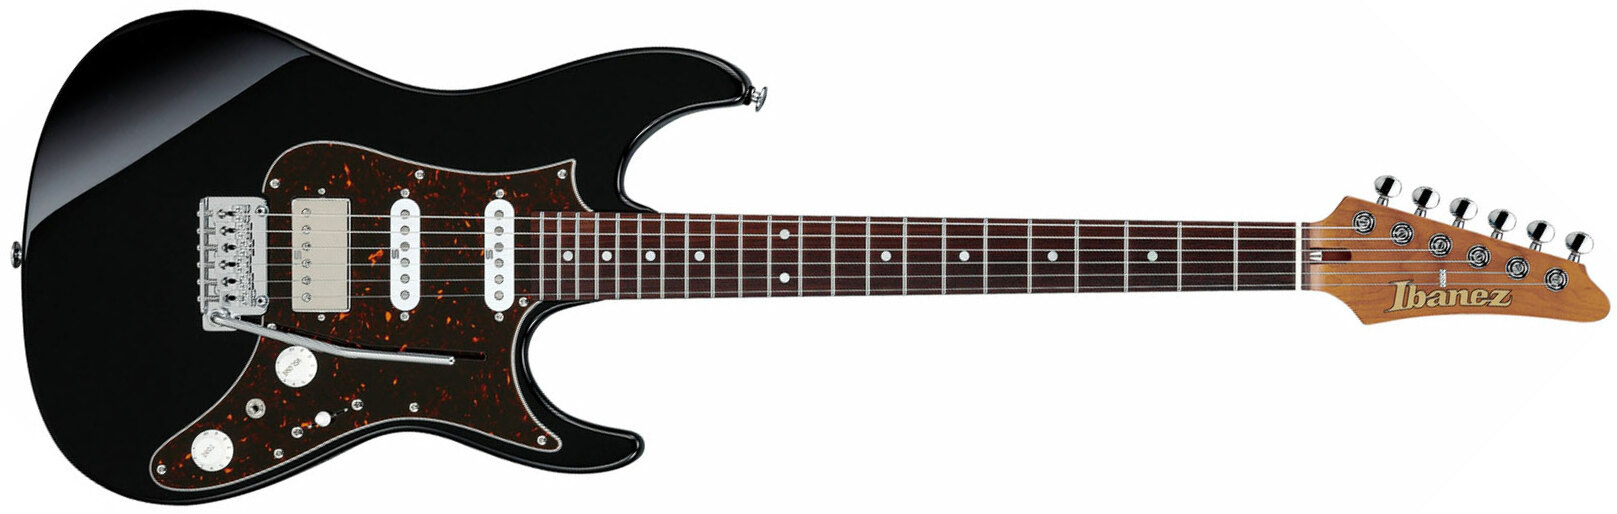 Ibanez Az2204b Bk Prestige Jap Hss Seymour Duncan Trem Mn - Black - Guitarra eléctrica con forma de str. - Main picture